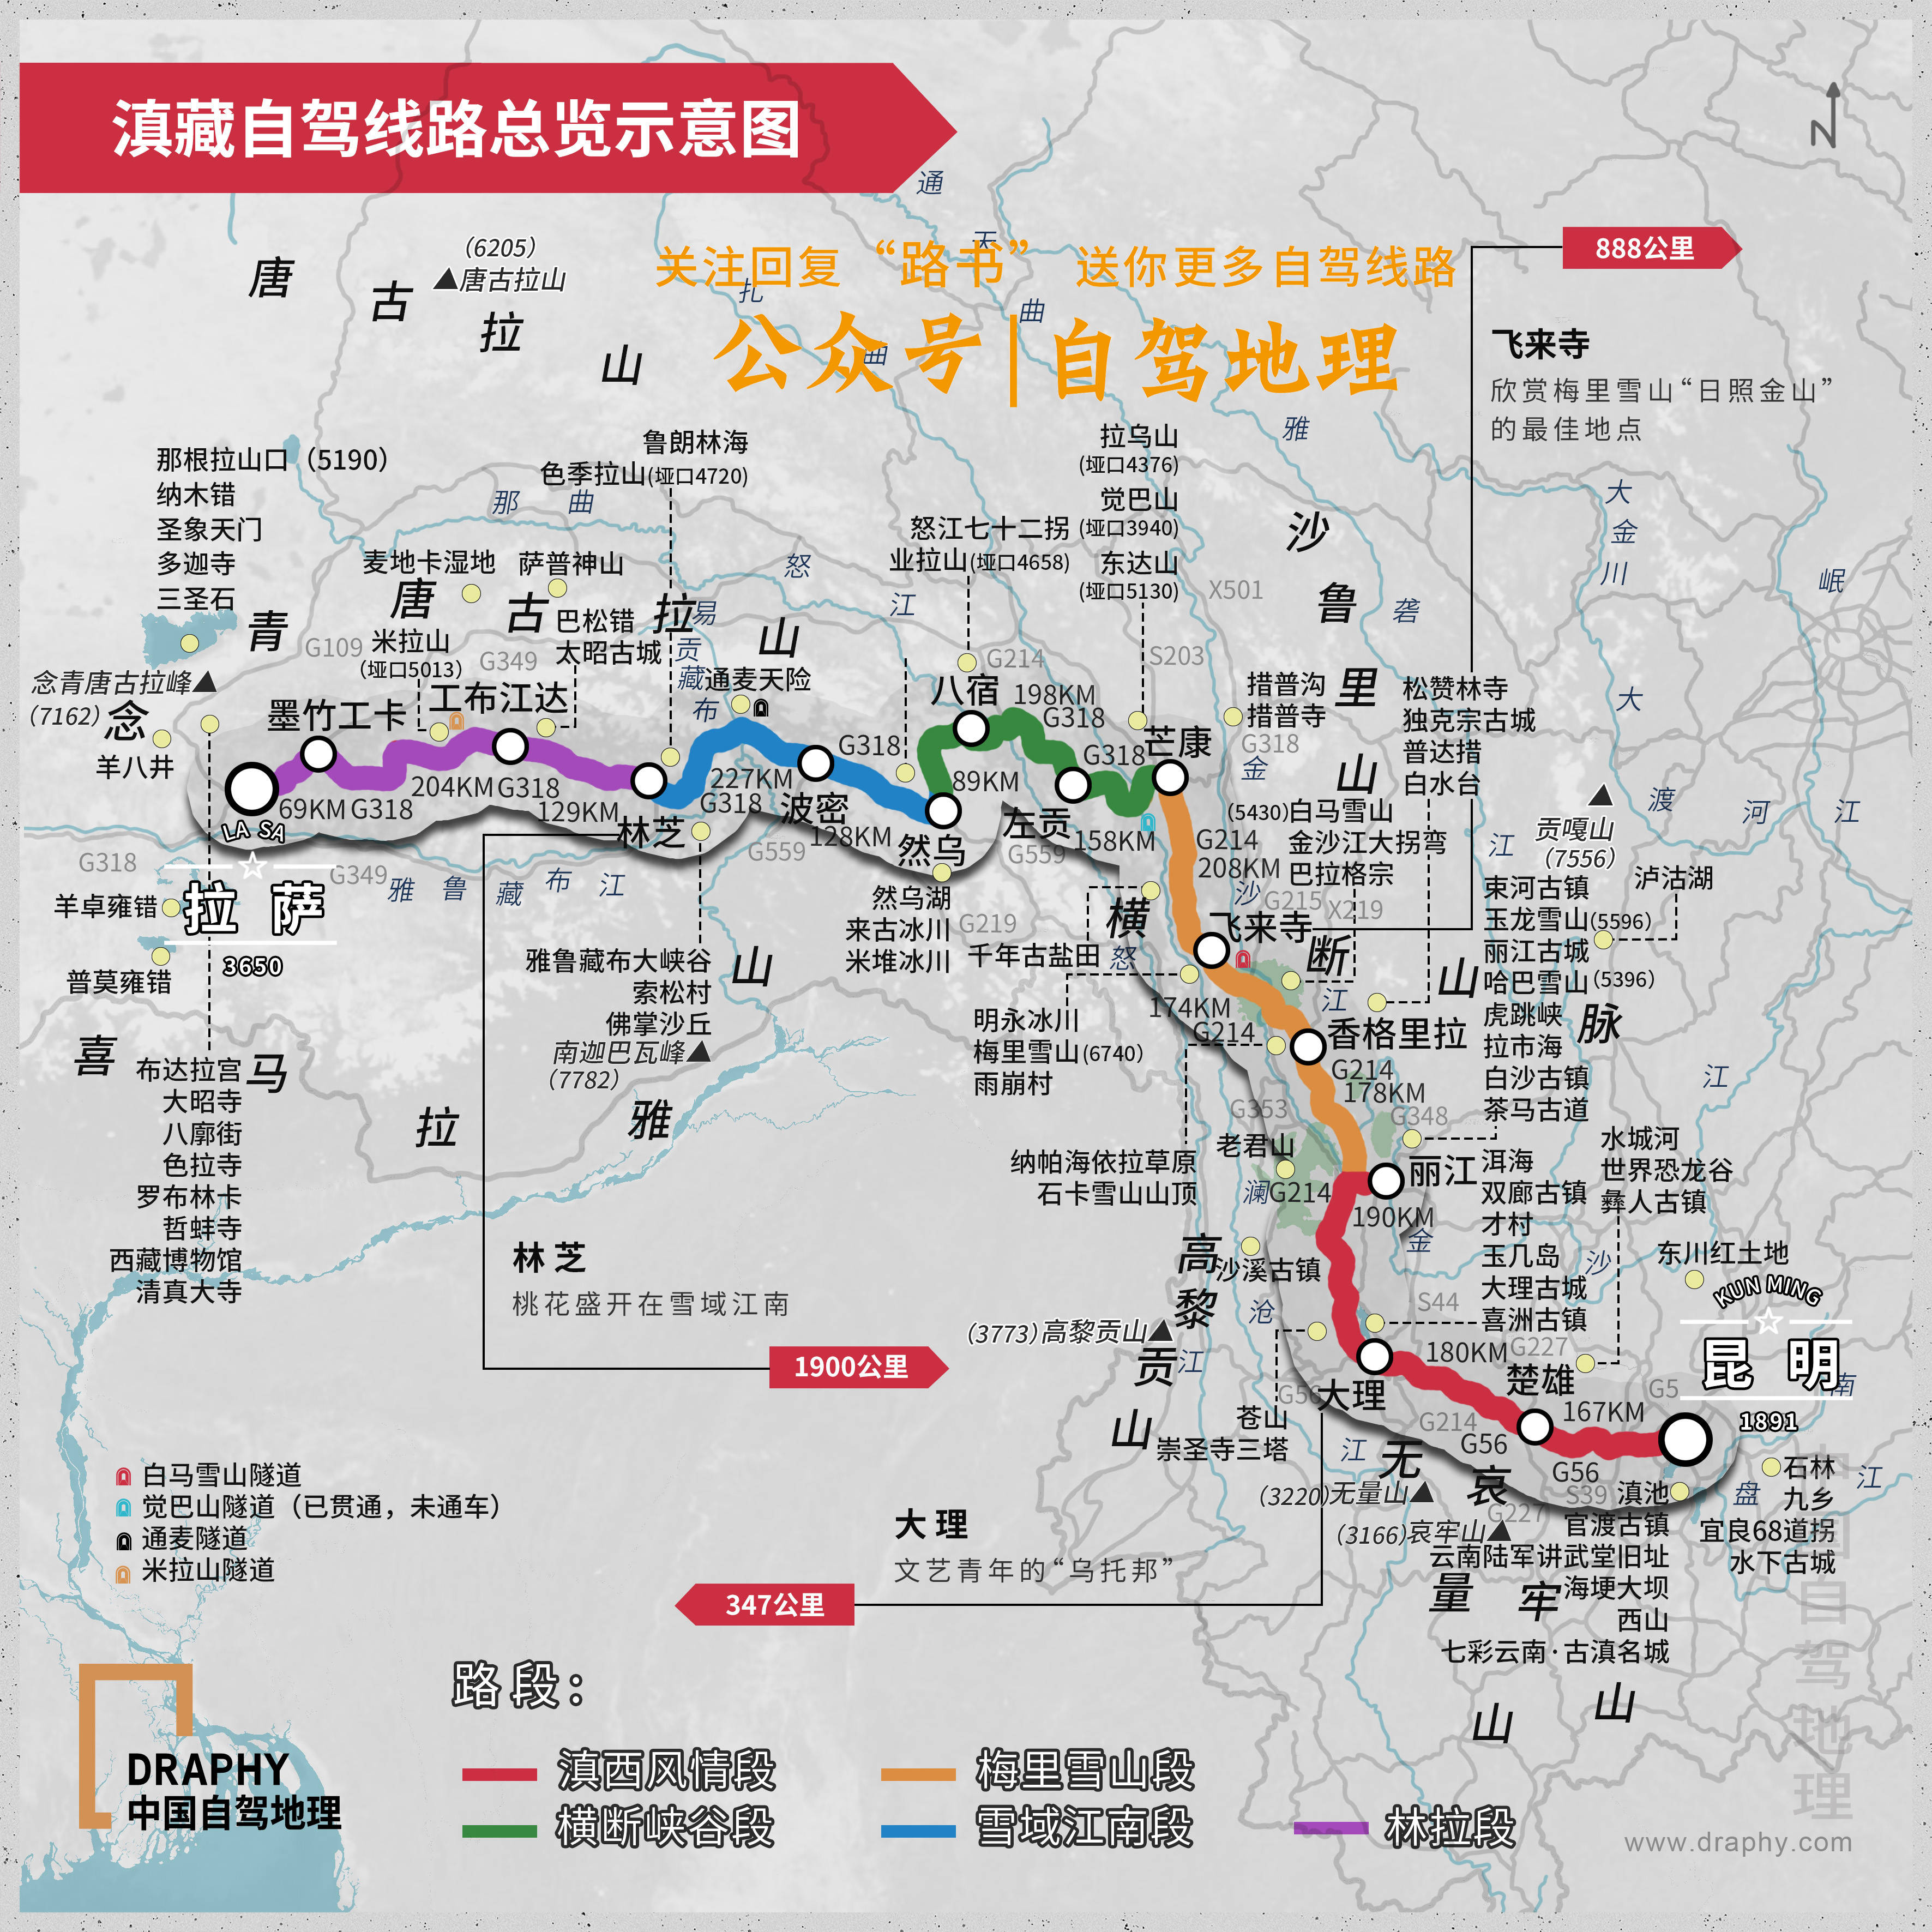 滇藏线自驾线路总览示意图▼制图@《中国自驾地理》滇藏线海拔图沿途